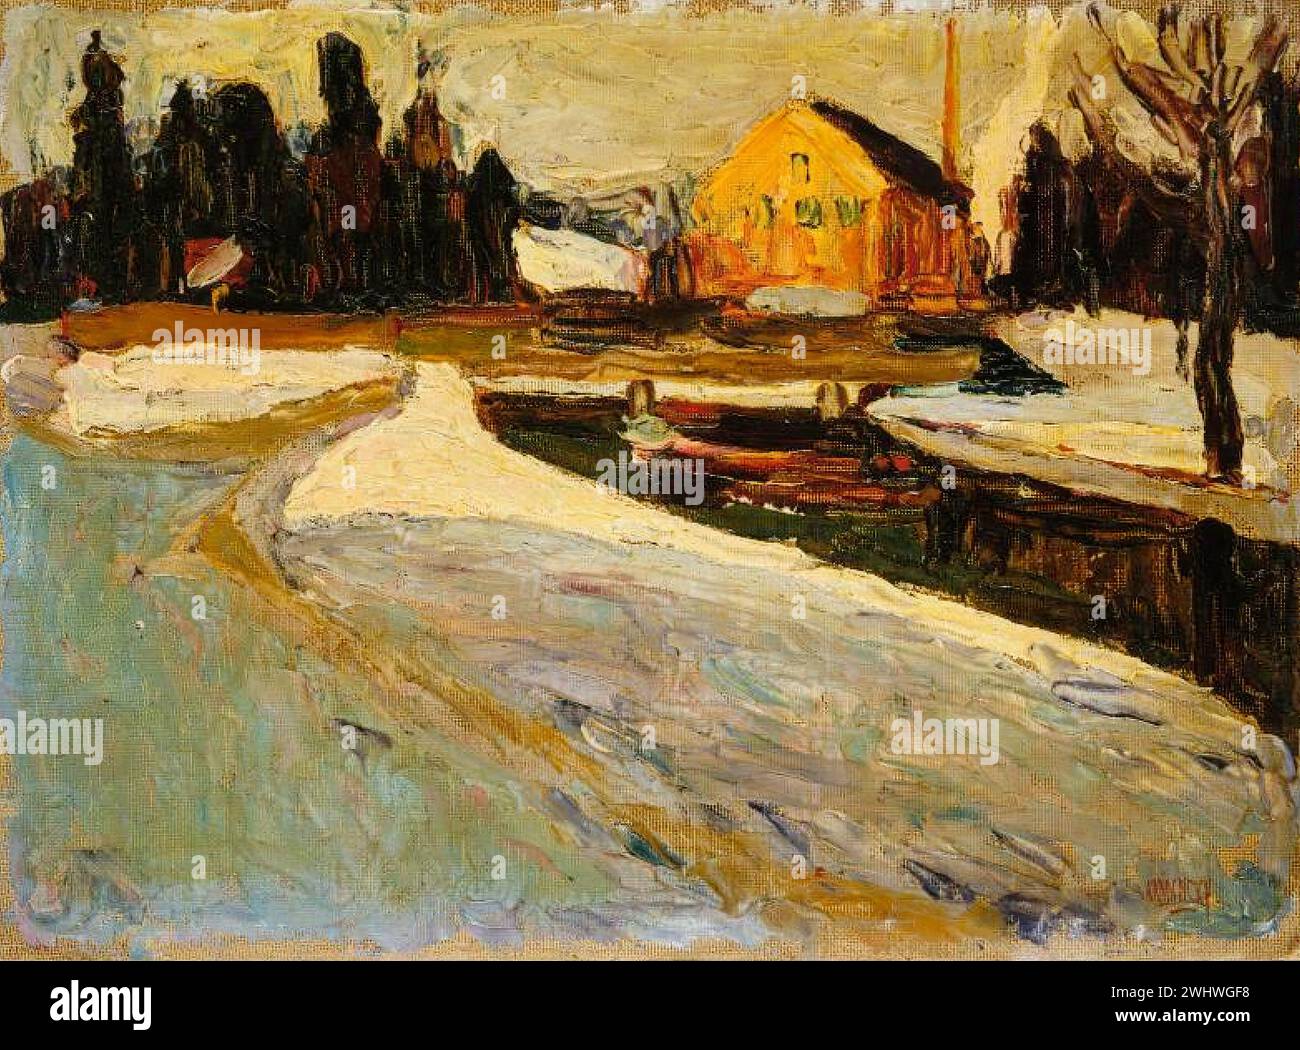 Vassily Kandinsky - Schwabing, soleil d'hiver Stock Photo